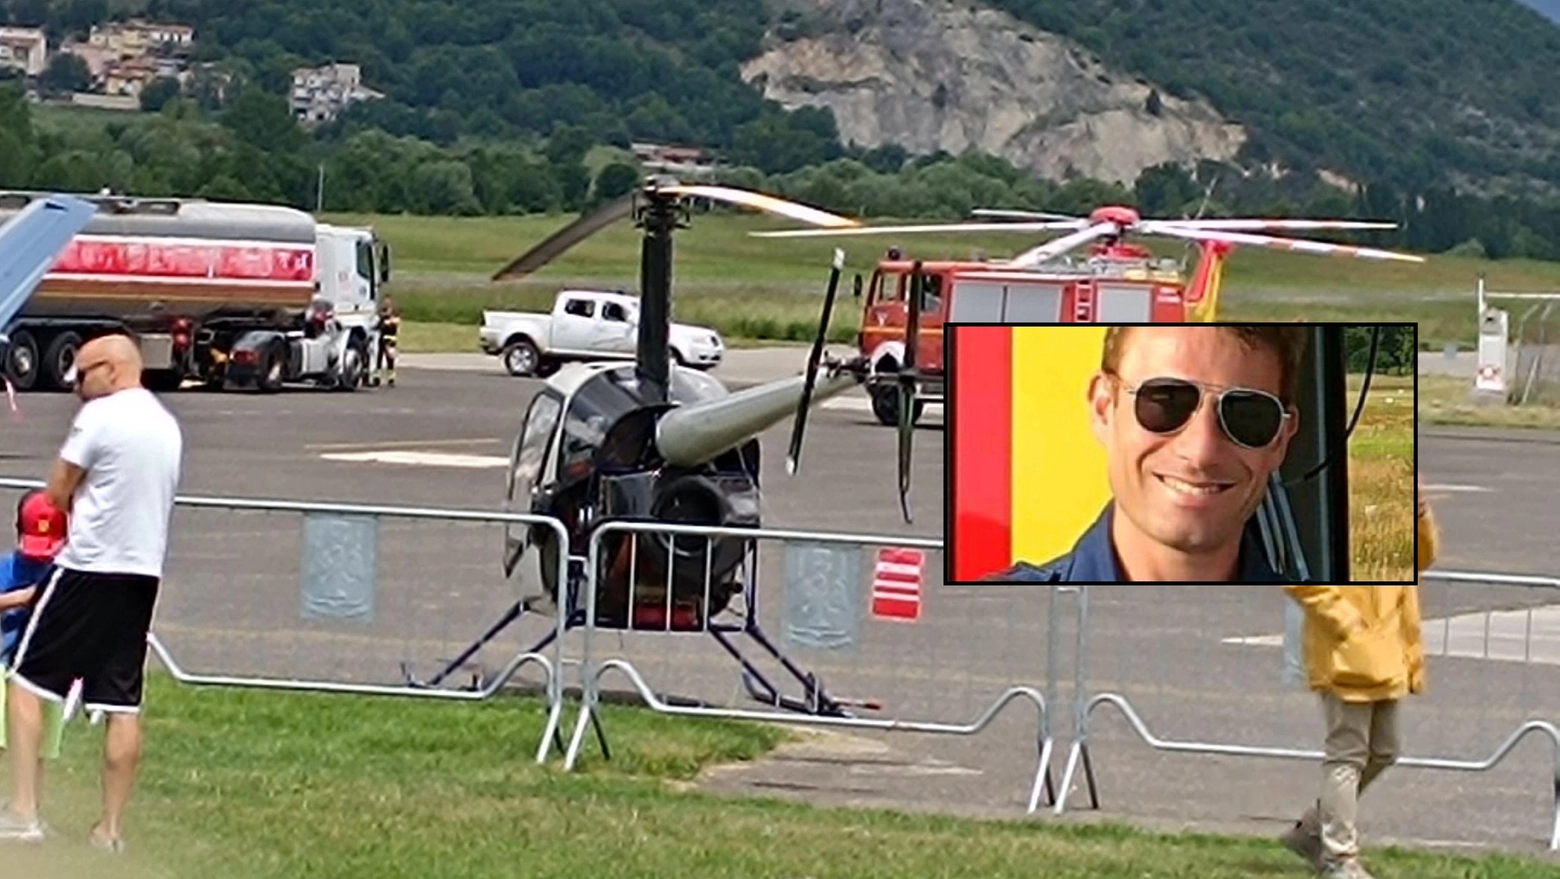 Incidente all'Air Show delle Frecce Tricolore a L'Aquila, nel riquadro la vittima Paolo Dal Pozzo